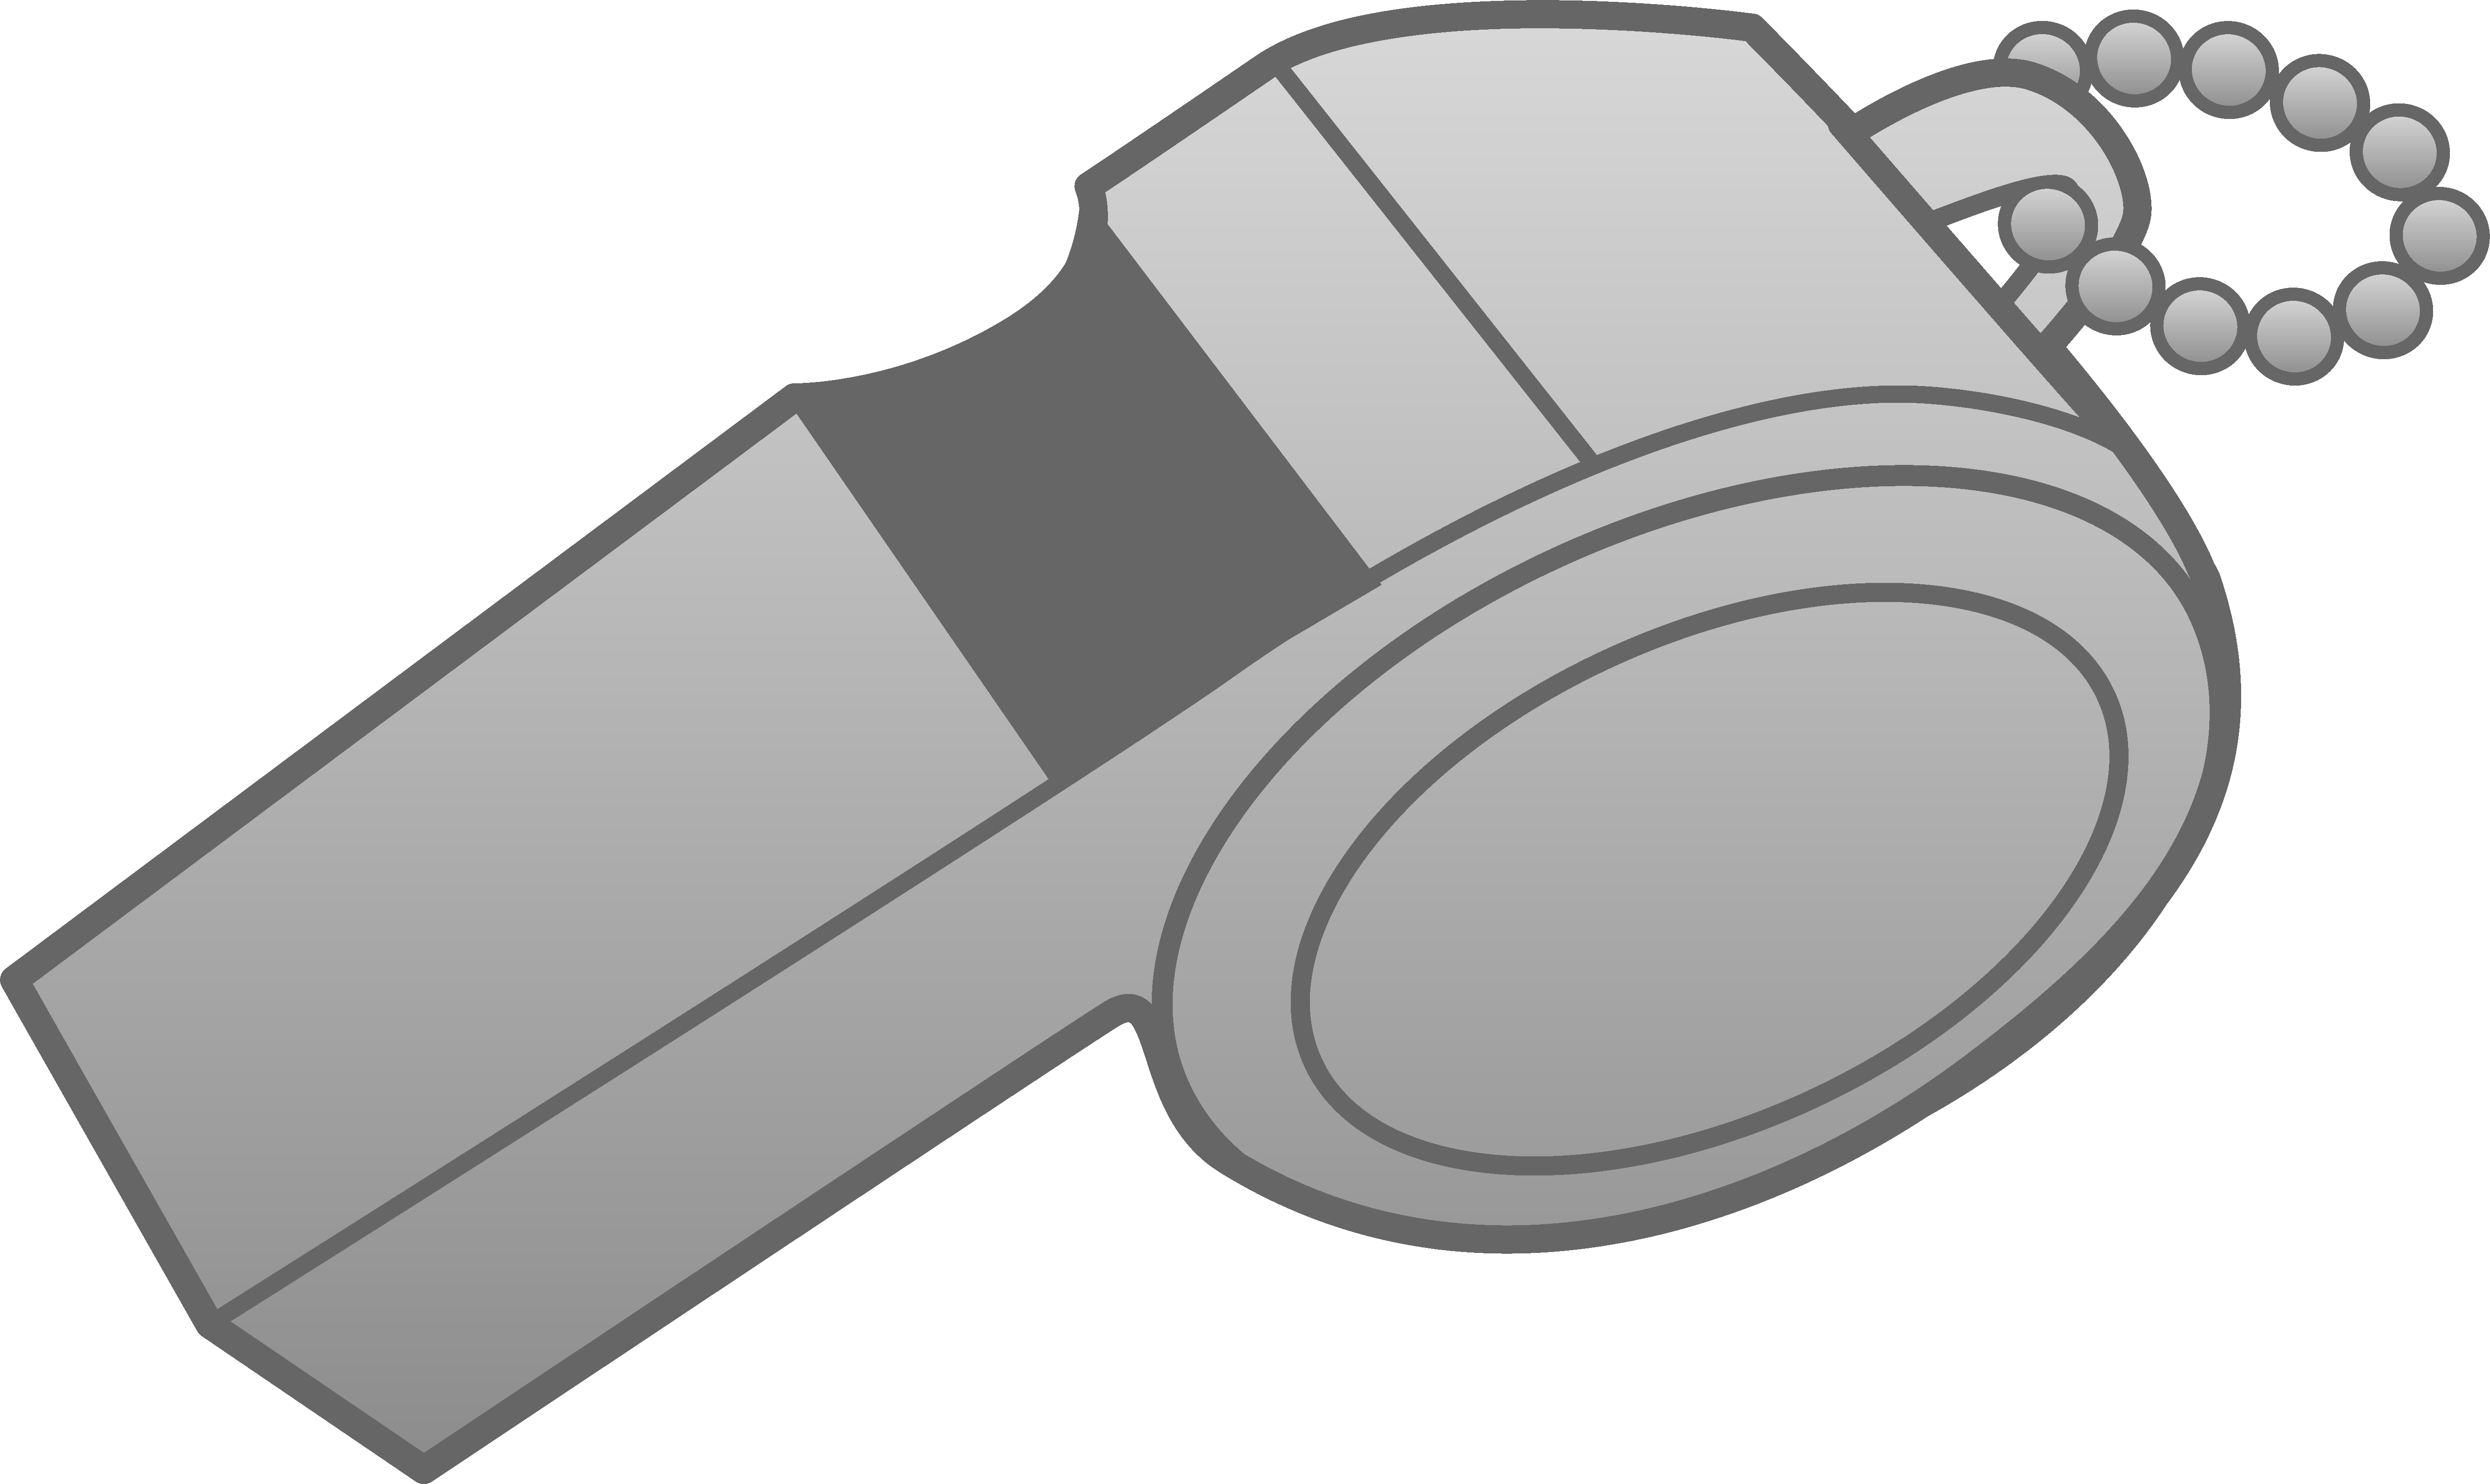 Silver Whistle Design - Free Clip Art